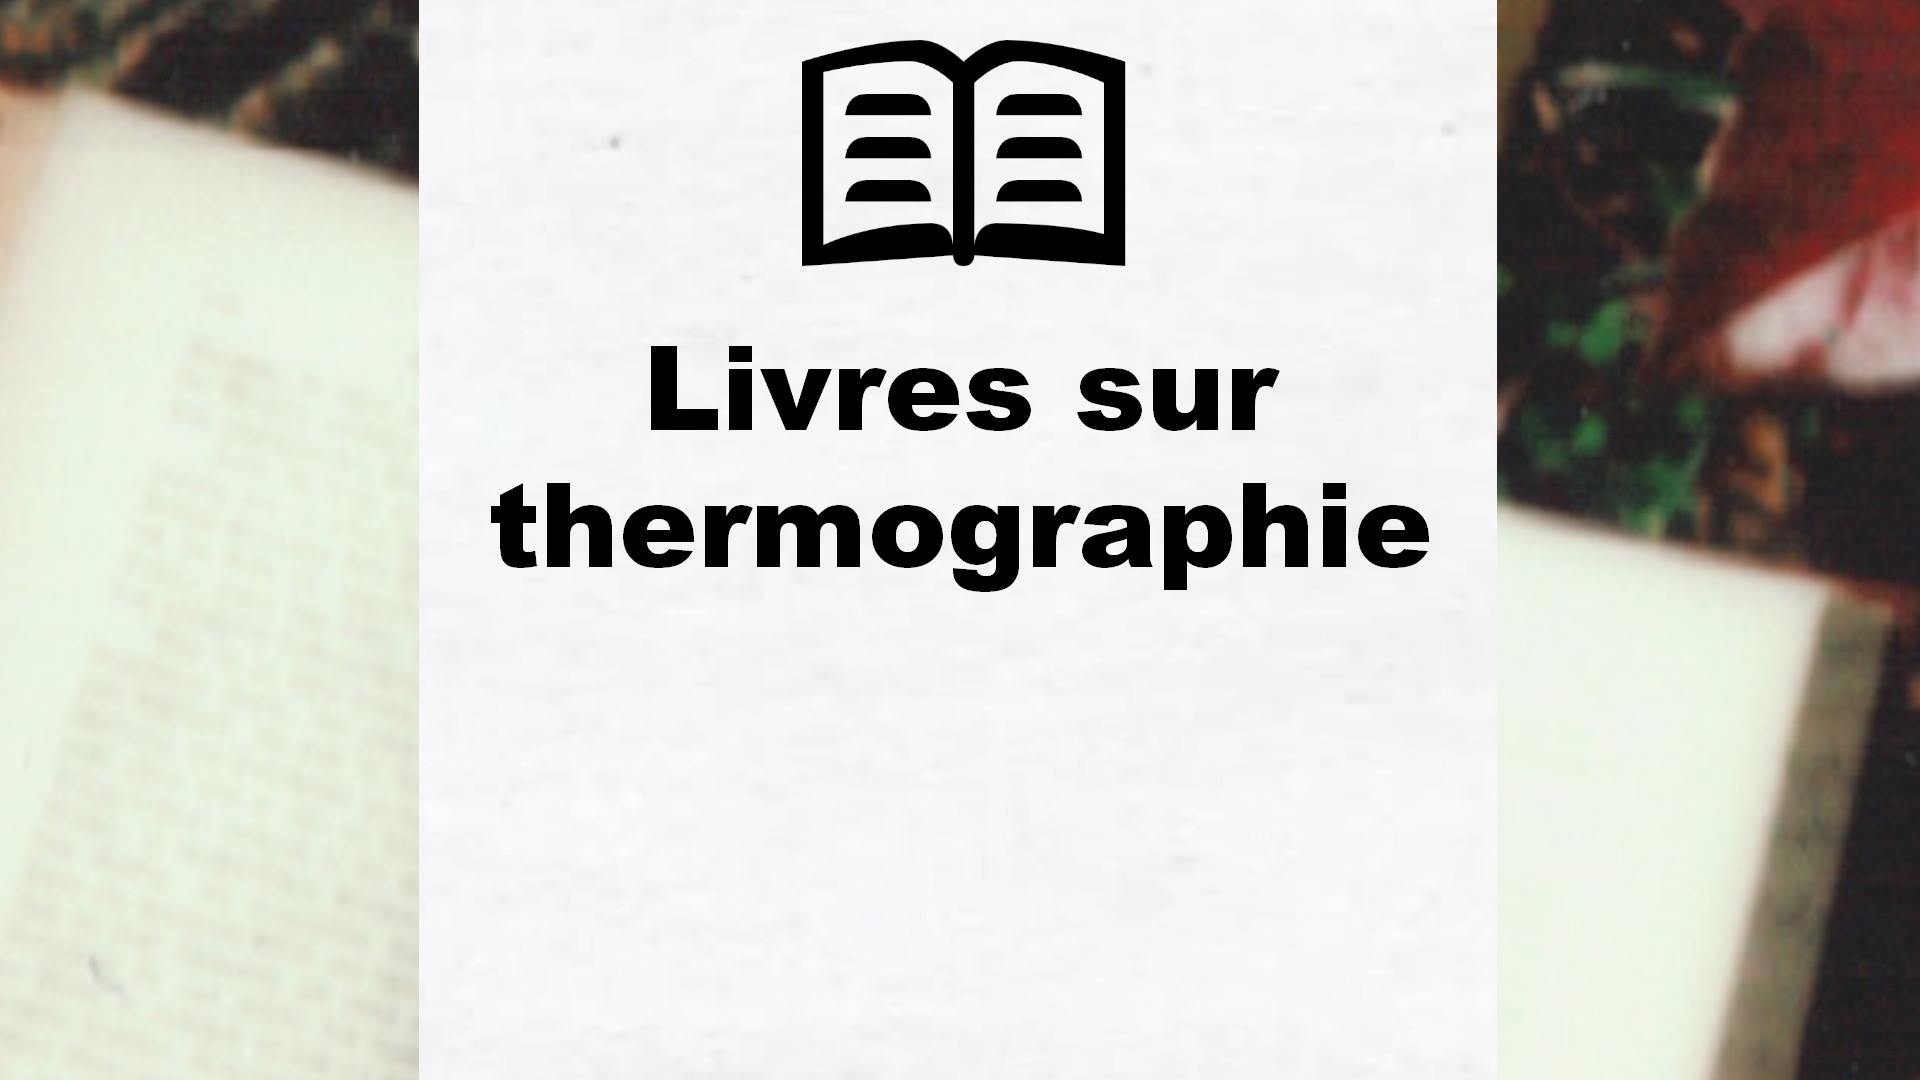 Livres sur thermographie